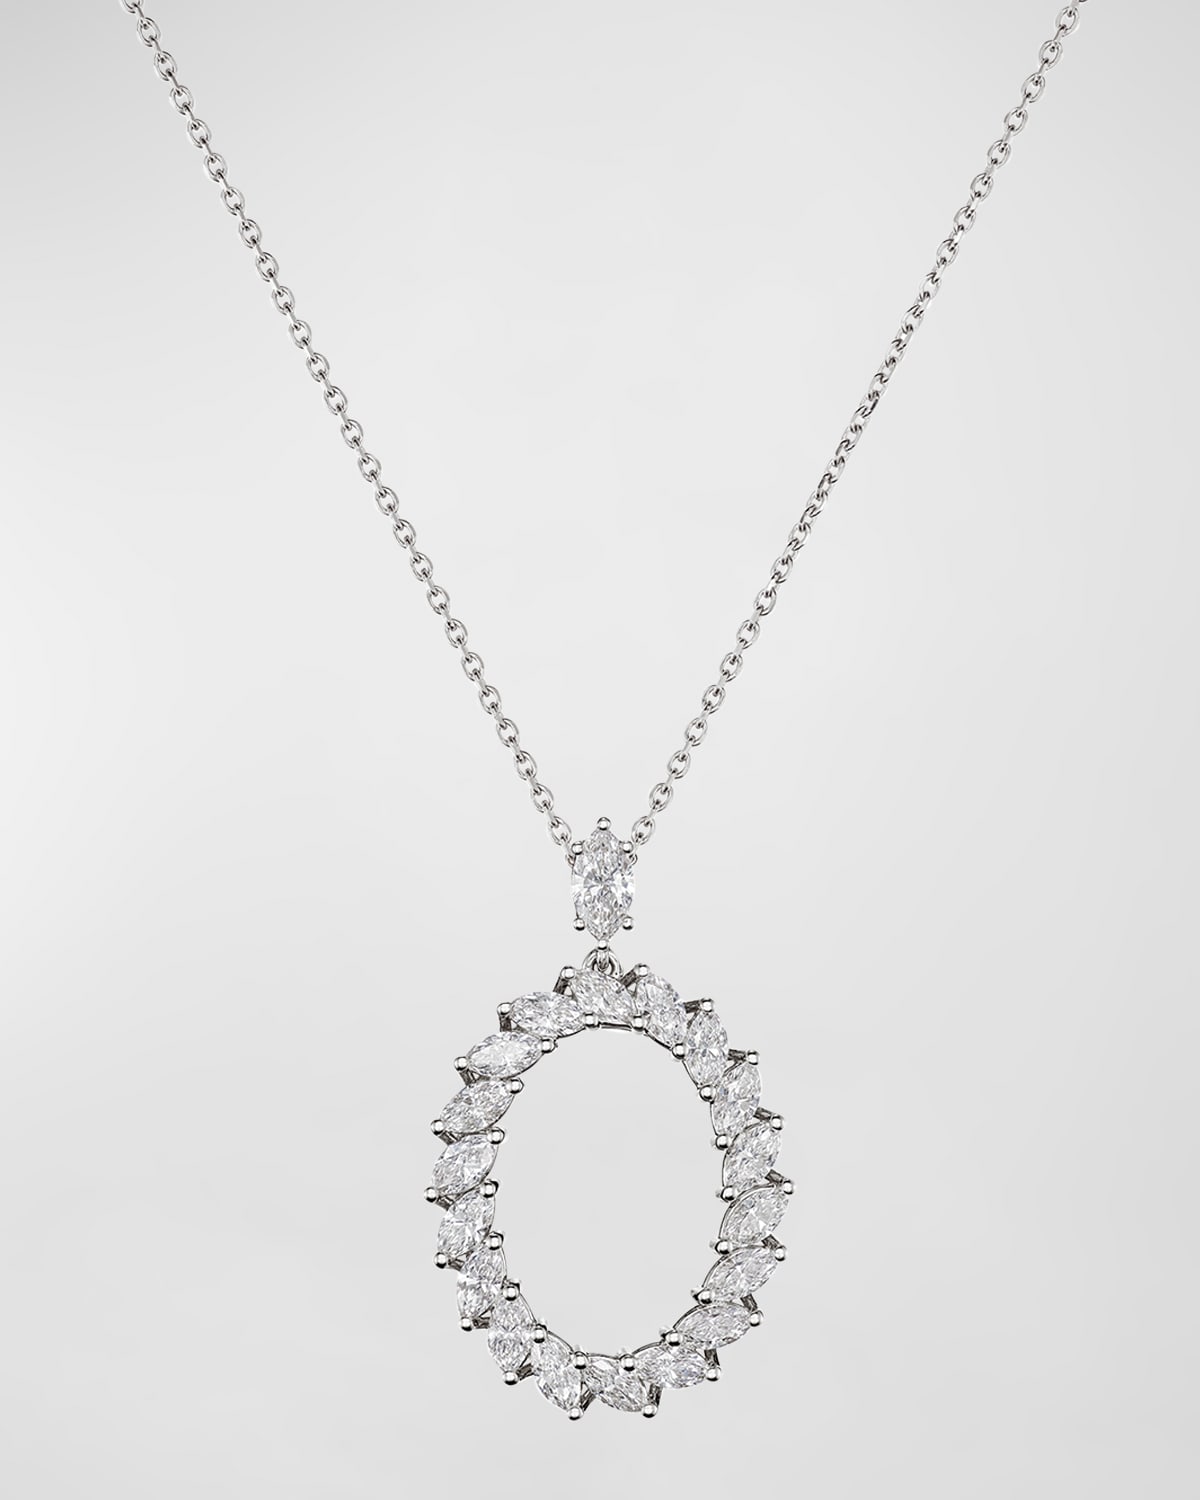 L'Heure du Diamant 18K White Gold Oval Pendant Necklace